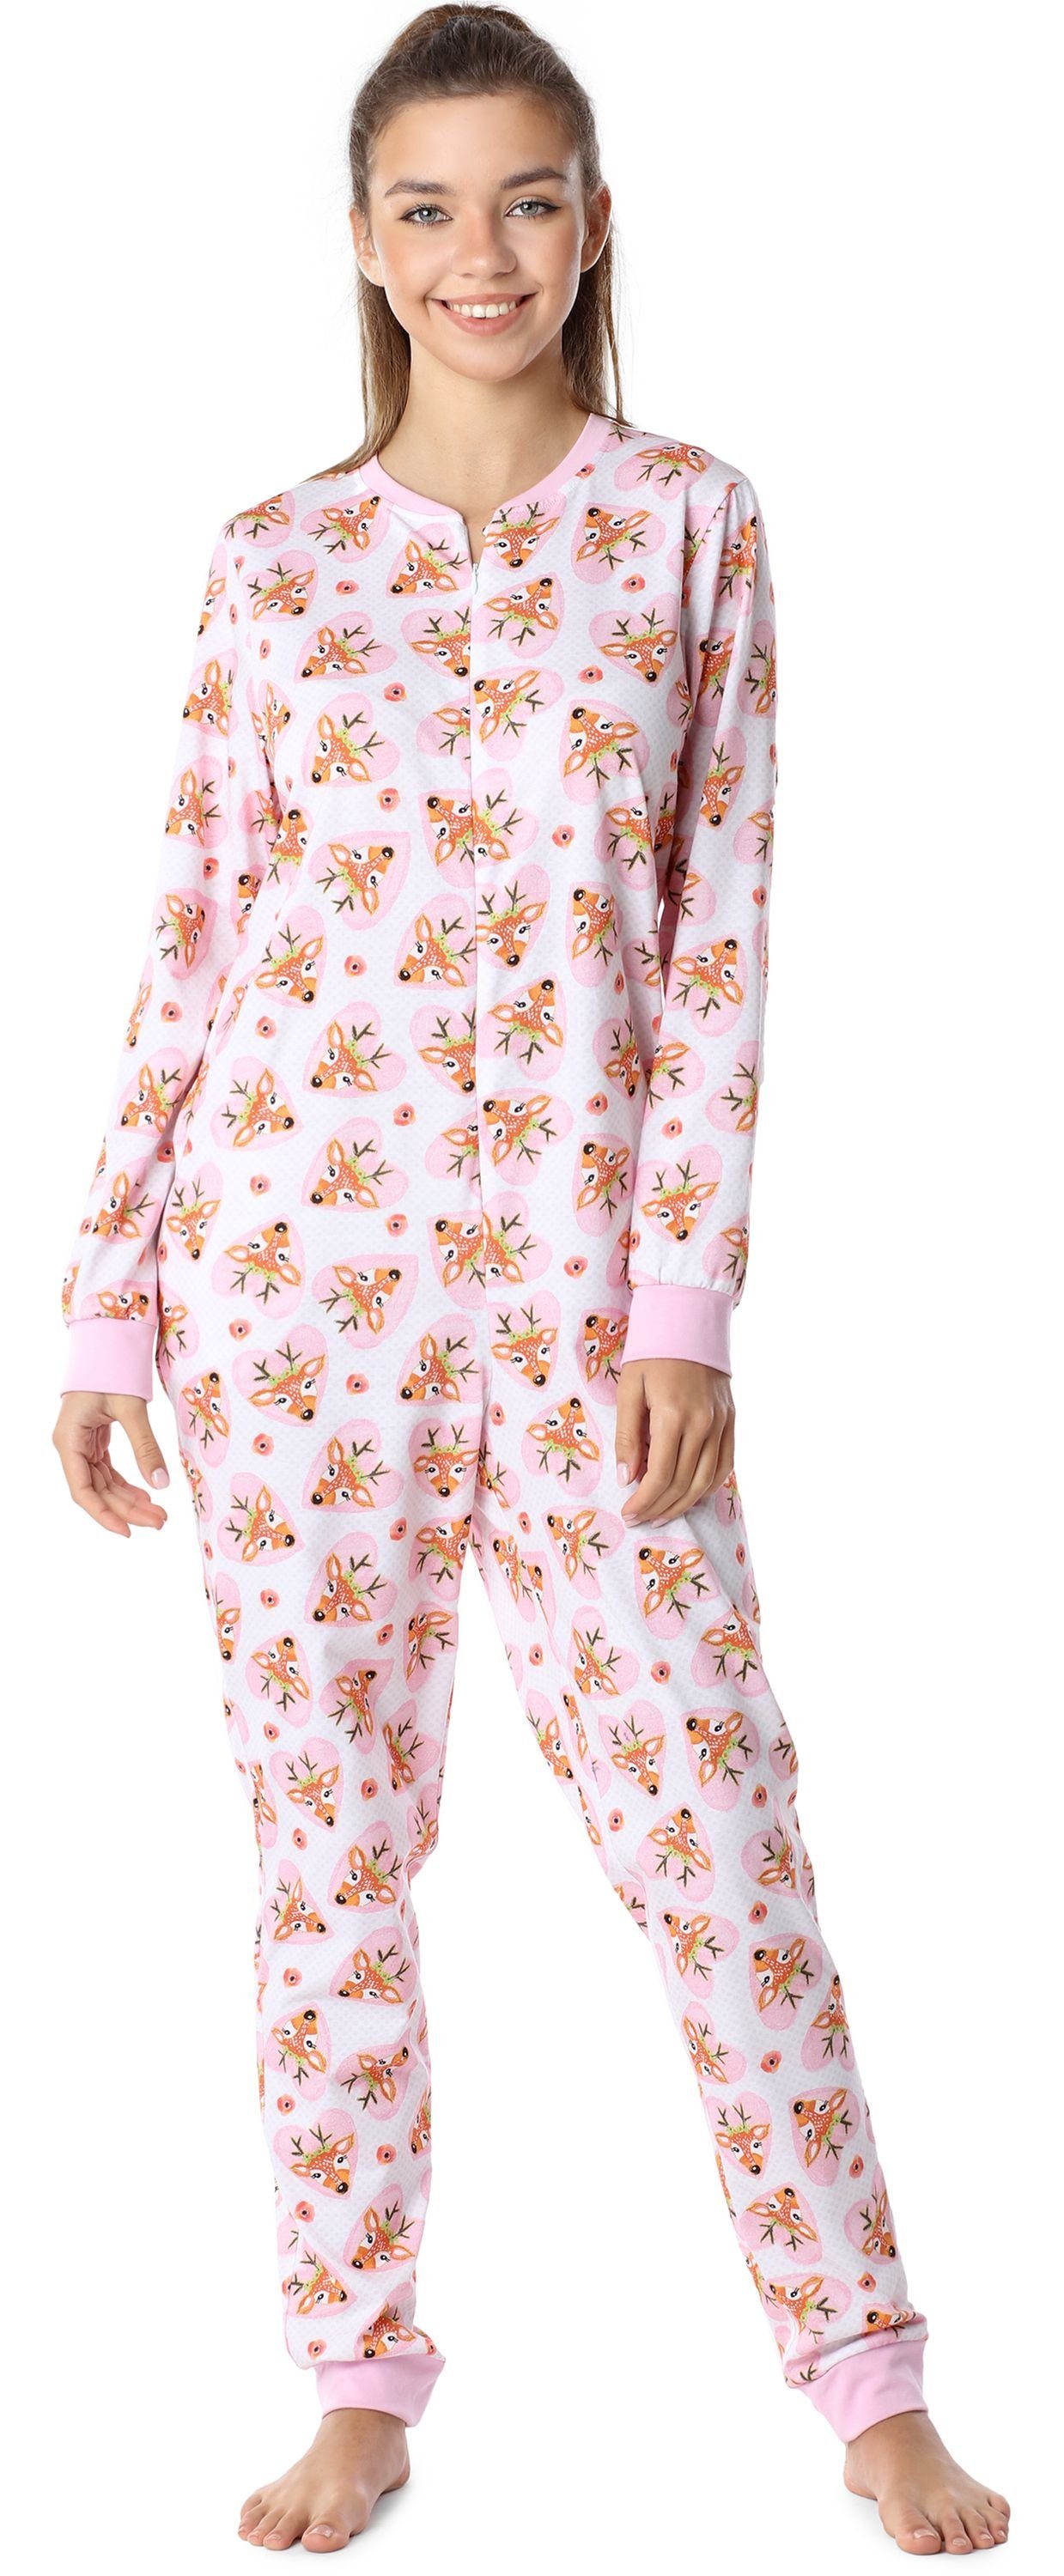 Merry Style Schlafanzug Mädchen Jugend Schlafanzug Schlafoverall MS10-235